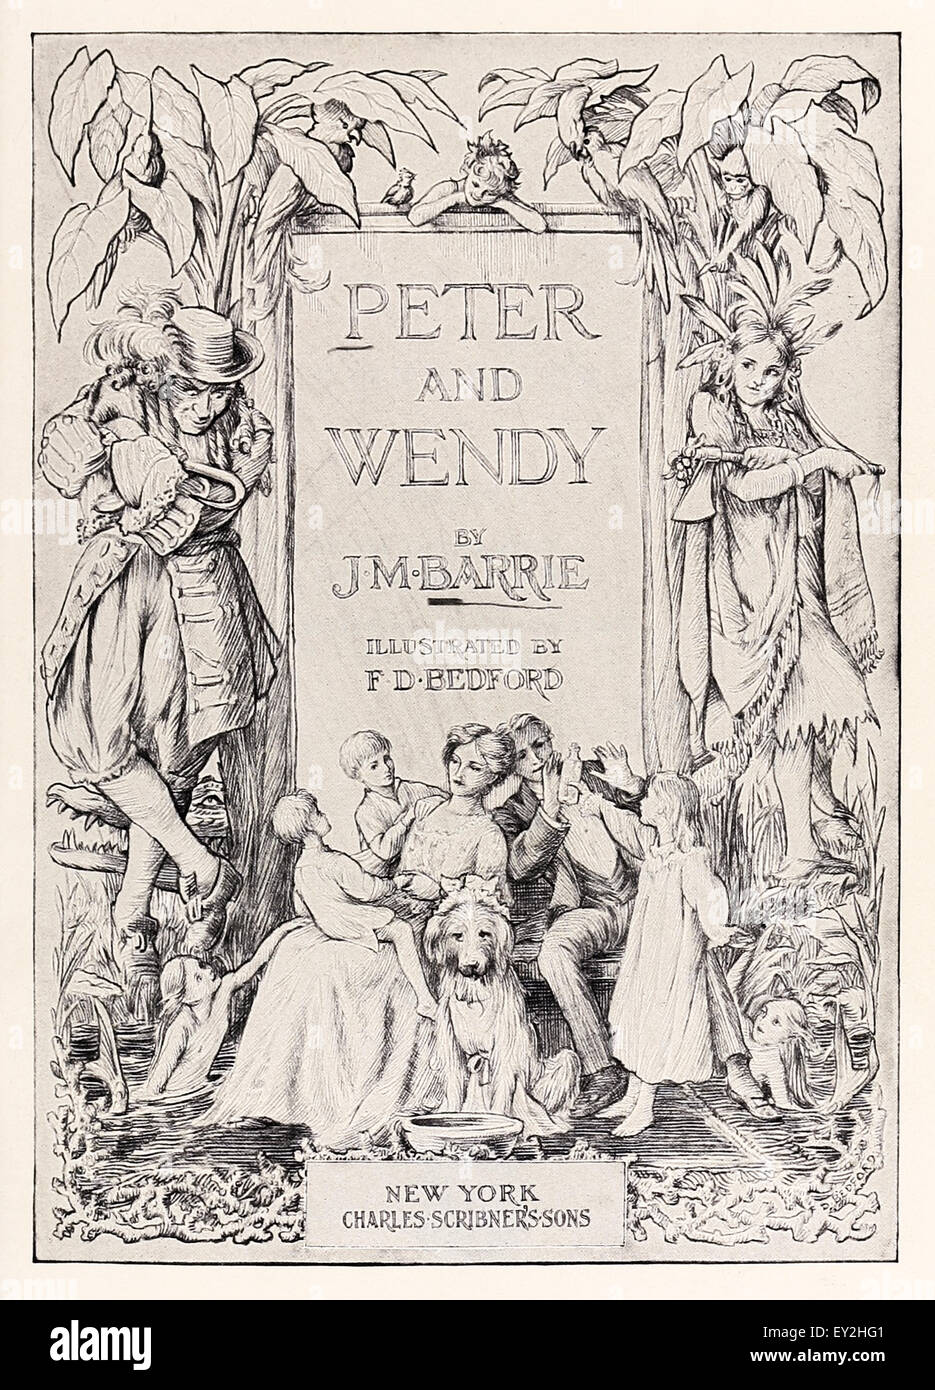 Frontespizio da 'Peter & Wendy' J.M. Barrie (1860-1937), illustrazione di F.D. Bedford (1864-1954). Vedere la descrizione per maggiori informazioni. Foto Stock